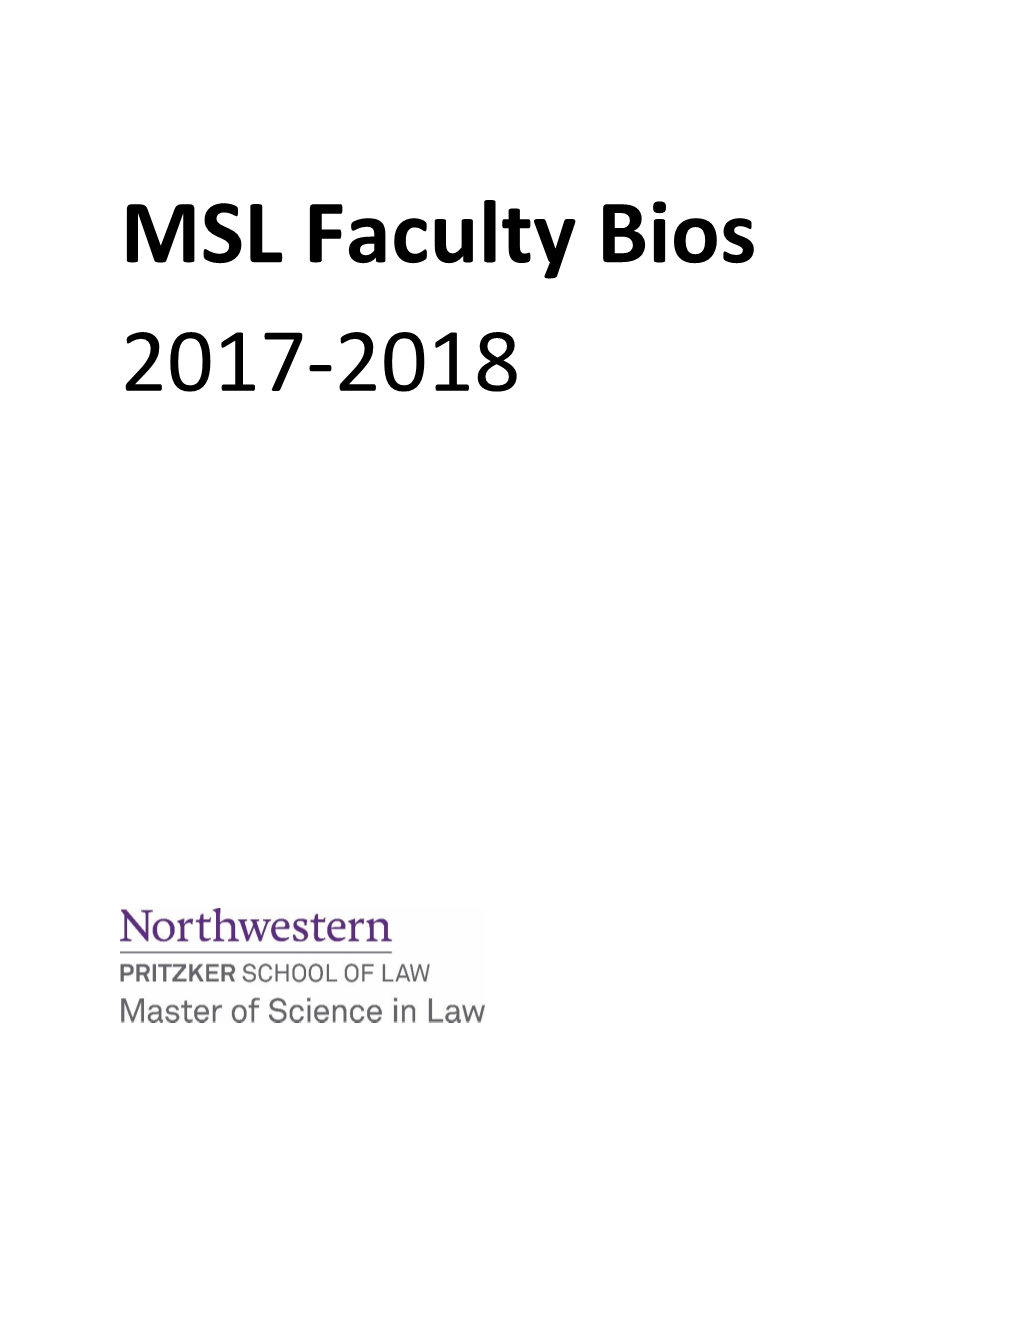 MSL Faculty Bios 2017-2018